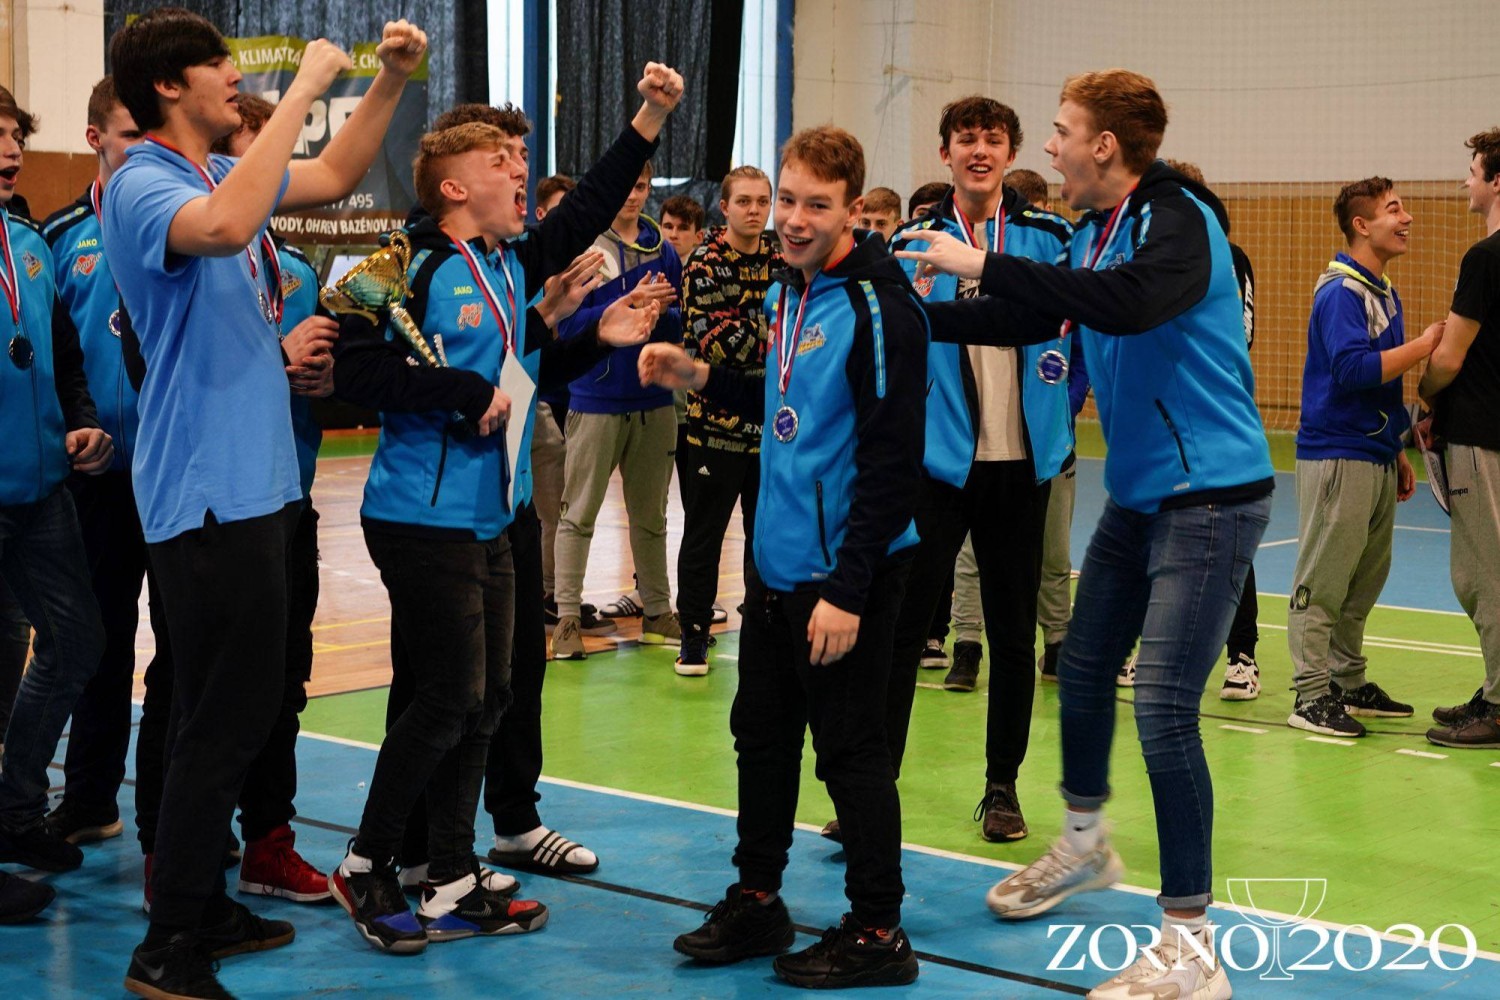 Mladí Házenkáři Pepino SKP Frýdek-Místek, úspěšně reprezentovali Frýdek-Místek a Moravskoslezský kraj na velmi kvalitně obsazeném turnaji Zorno Cup 2020